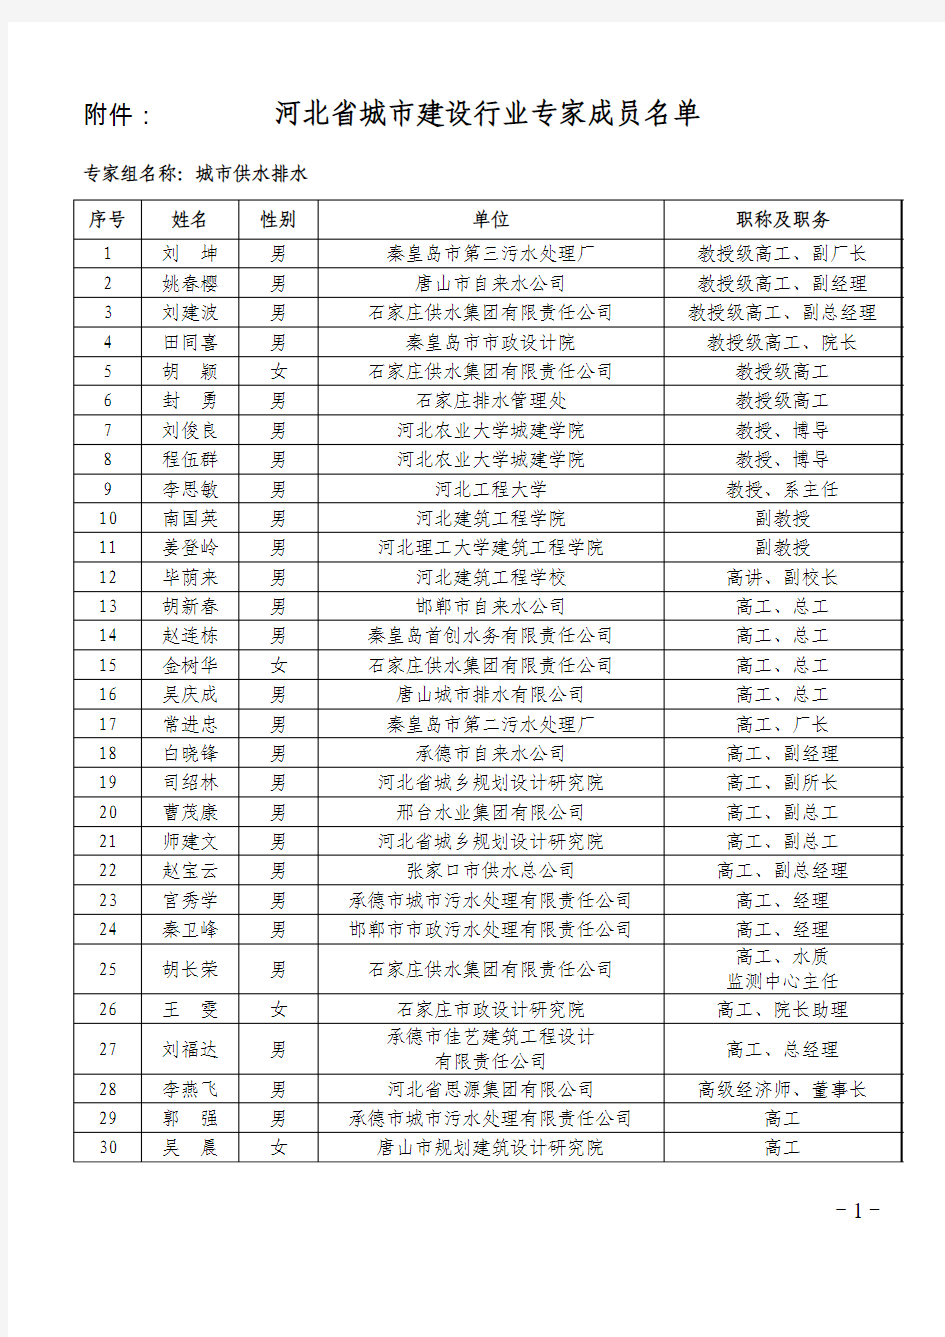 河北省城市建设行业专家成员名单